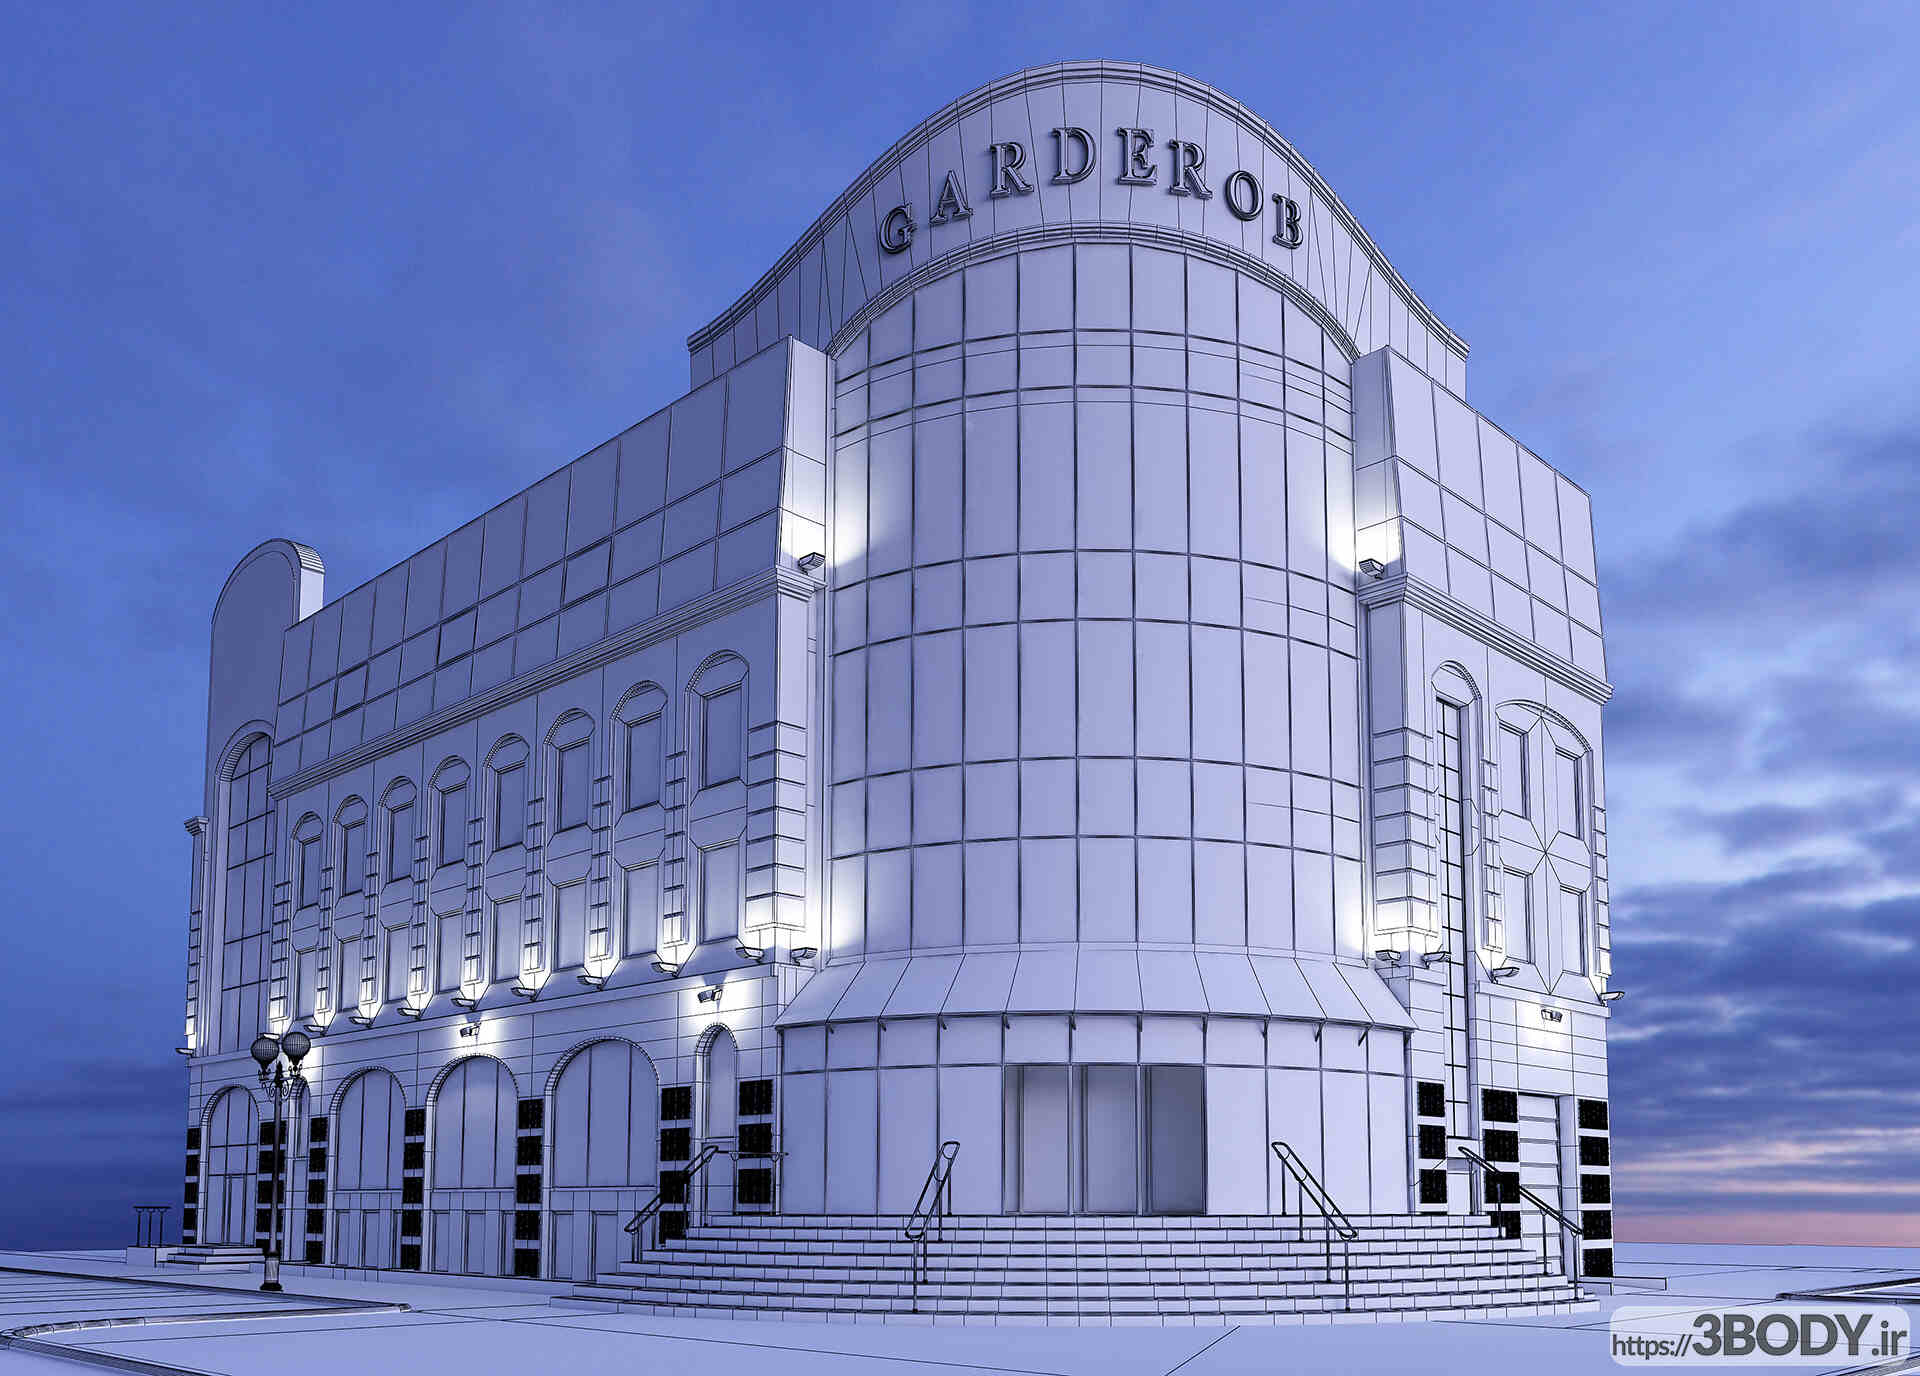 آبجکت سه بعدی نمای ساختمان Garderob عکس 2